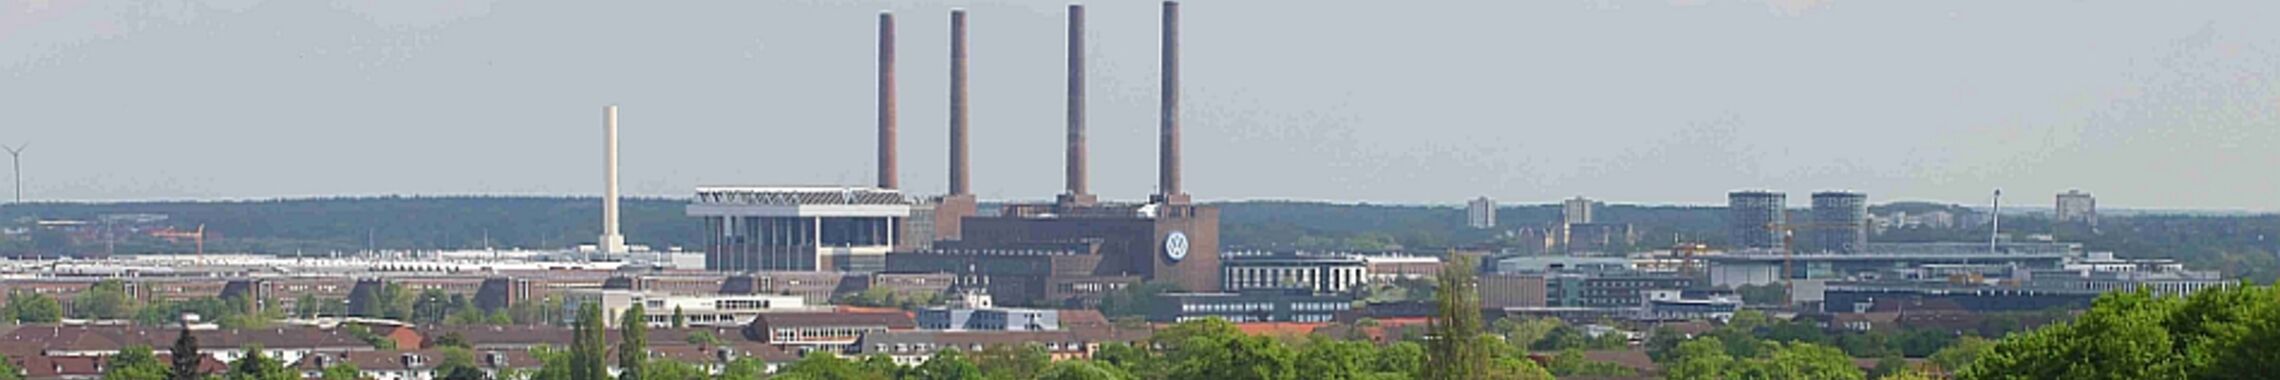 Wolfsburg vom Klieversberg aus gesehen. Foto (Ausschnitt) Frank Morgner